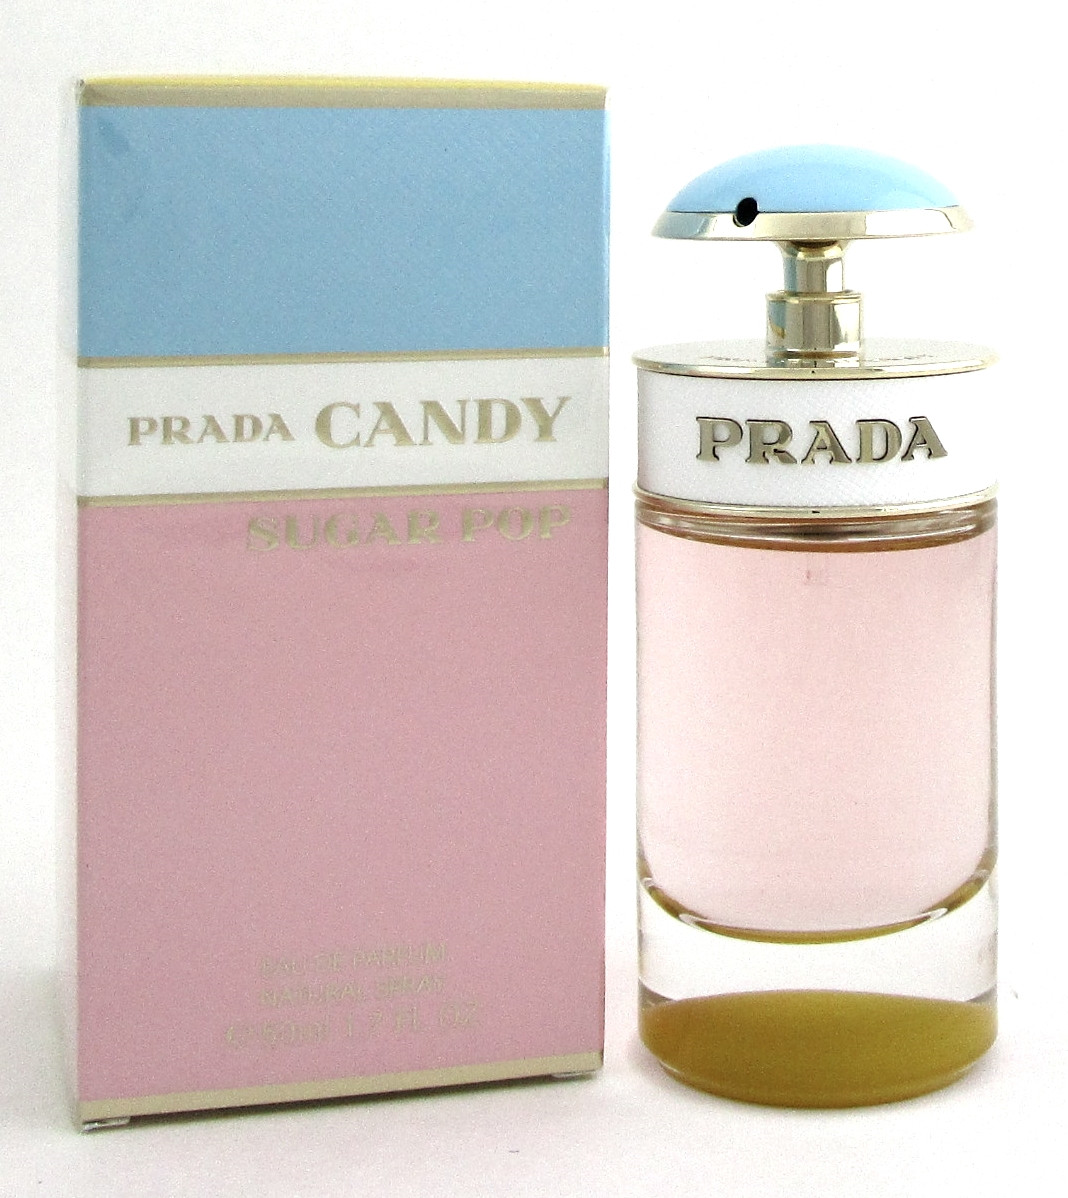 Prada Candy SUGAR POP Perfume 1.7 oz. Eau de Parfum Spray for Women ...